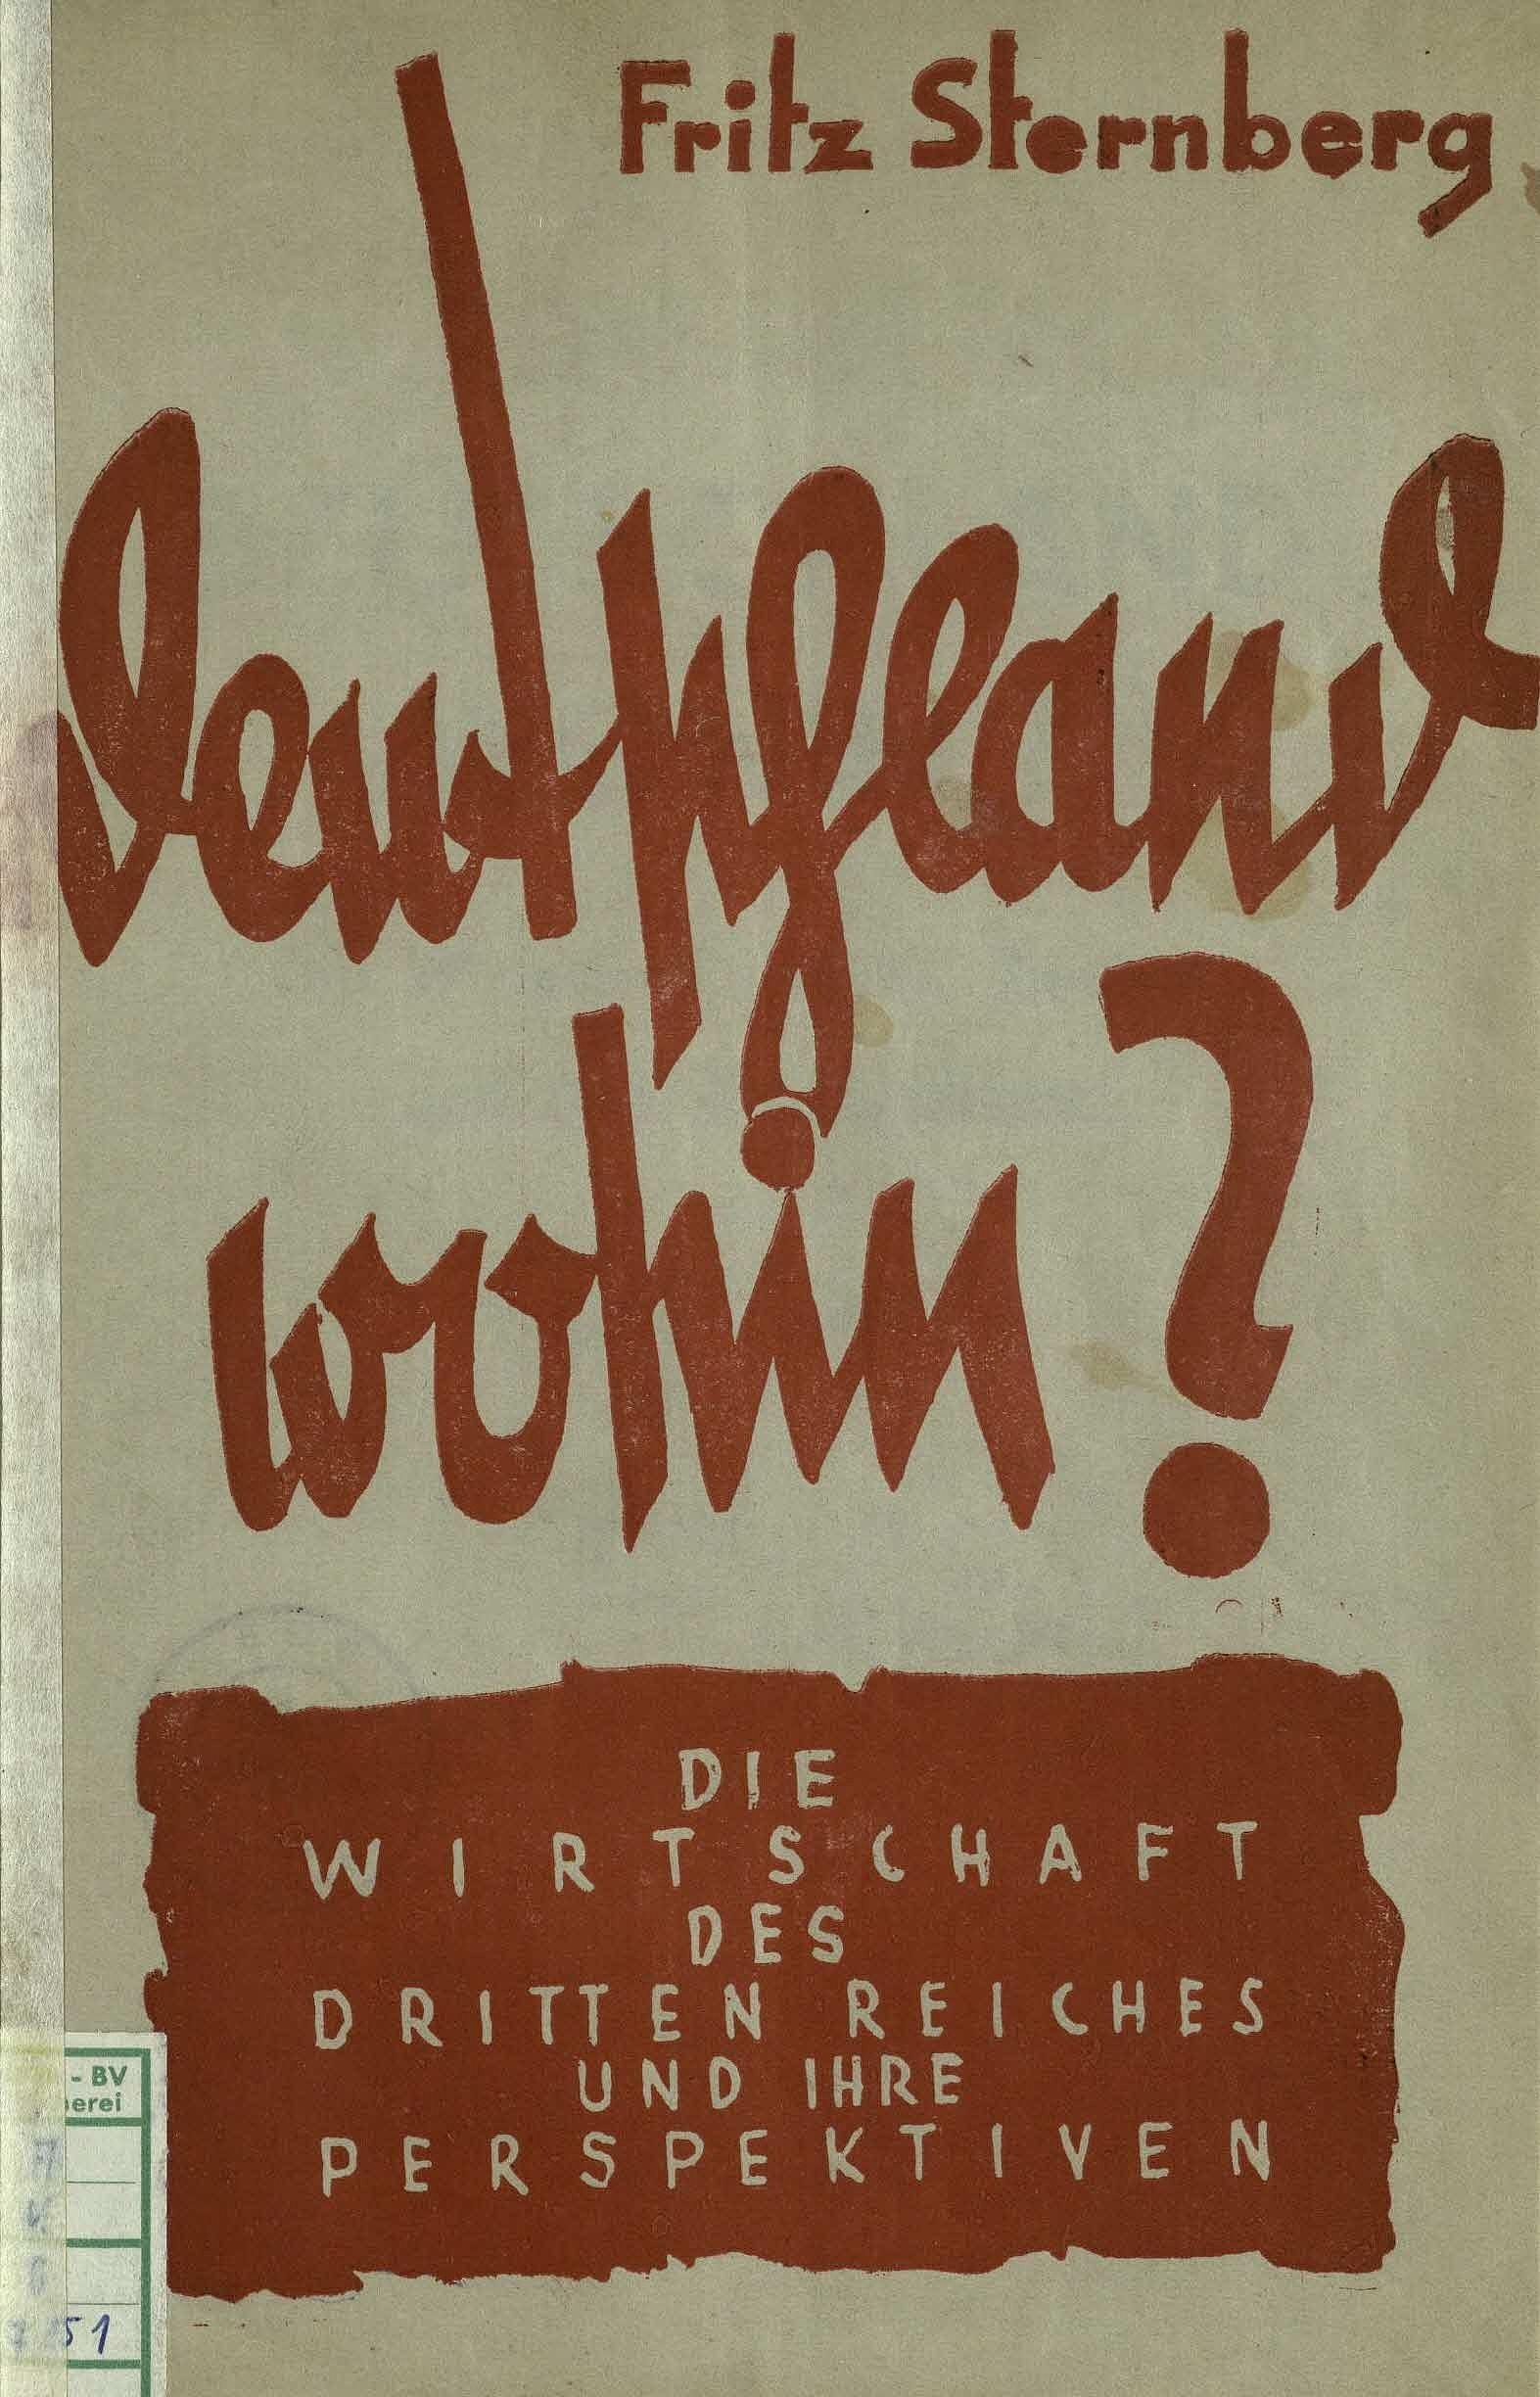 Buchcover "Deutschland wohin?" von Fritz Sternberg